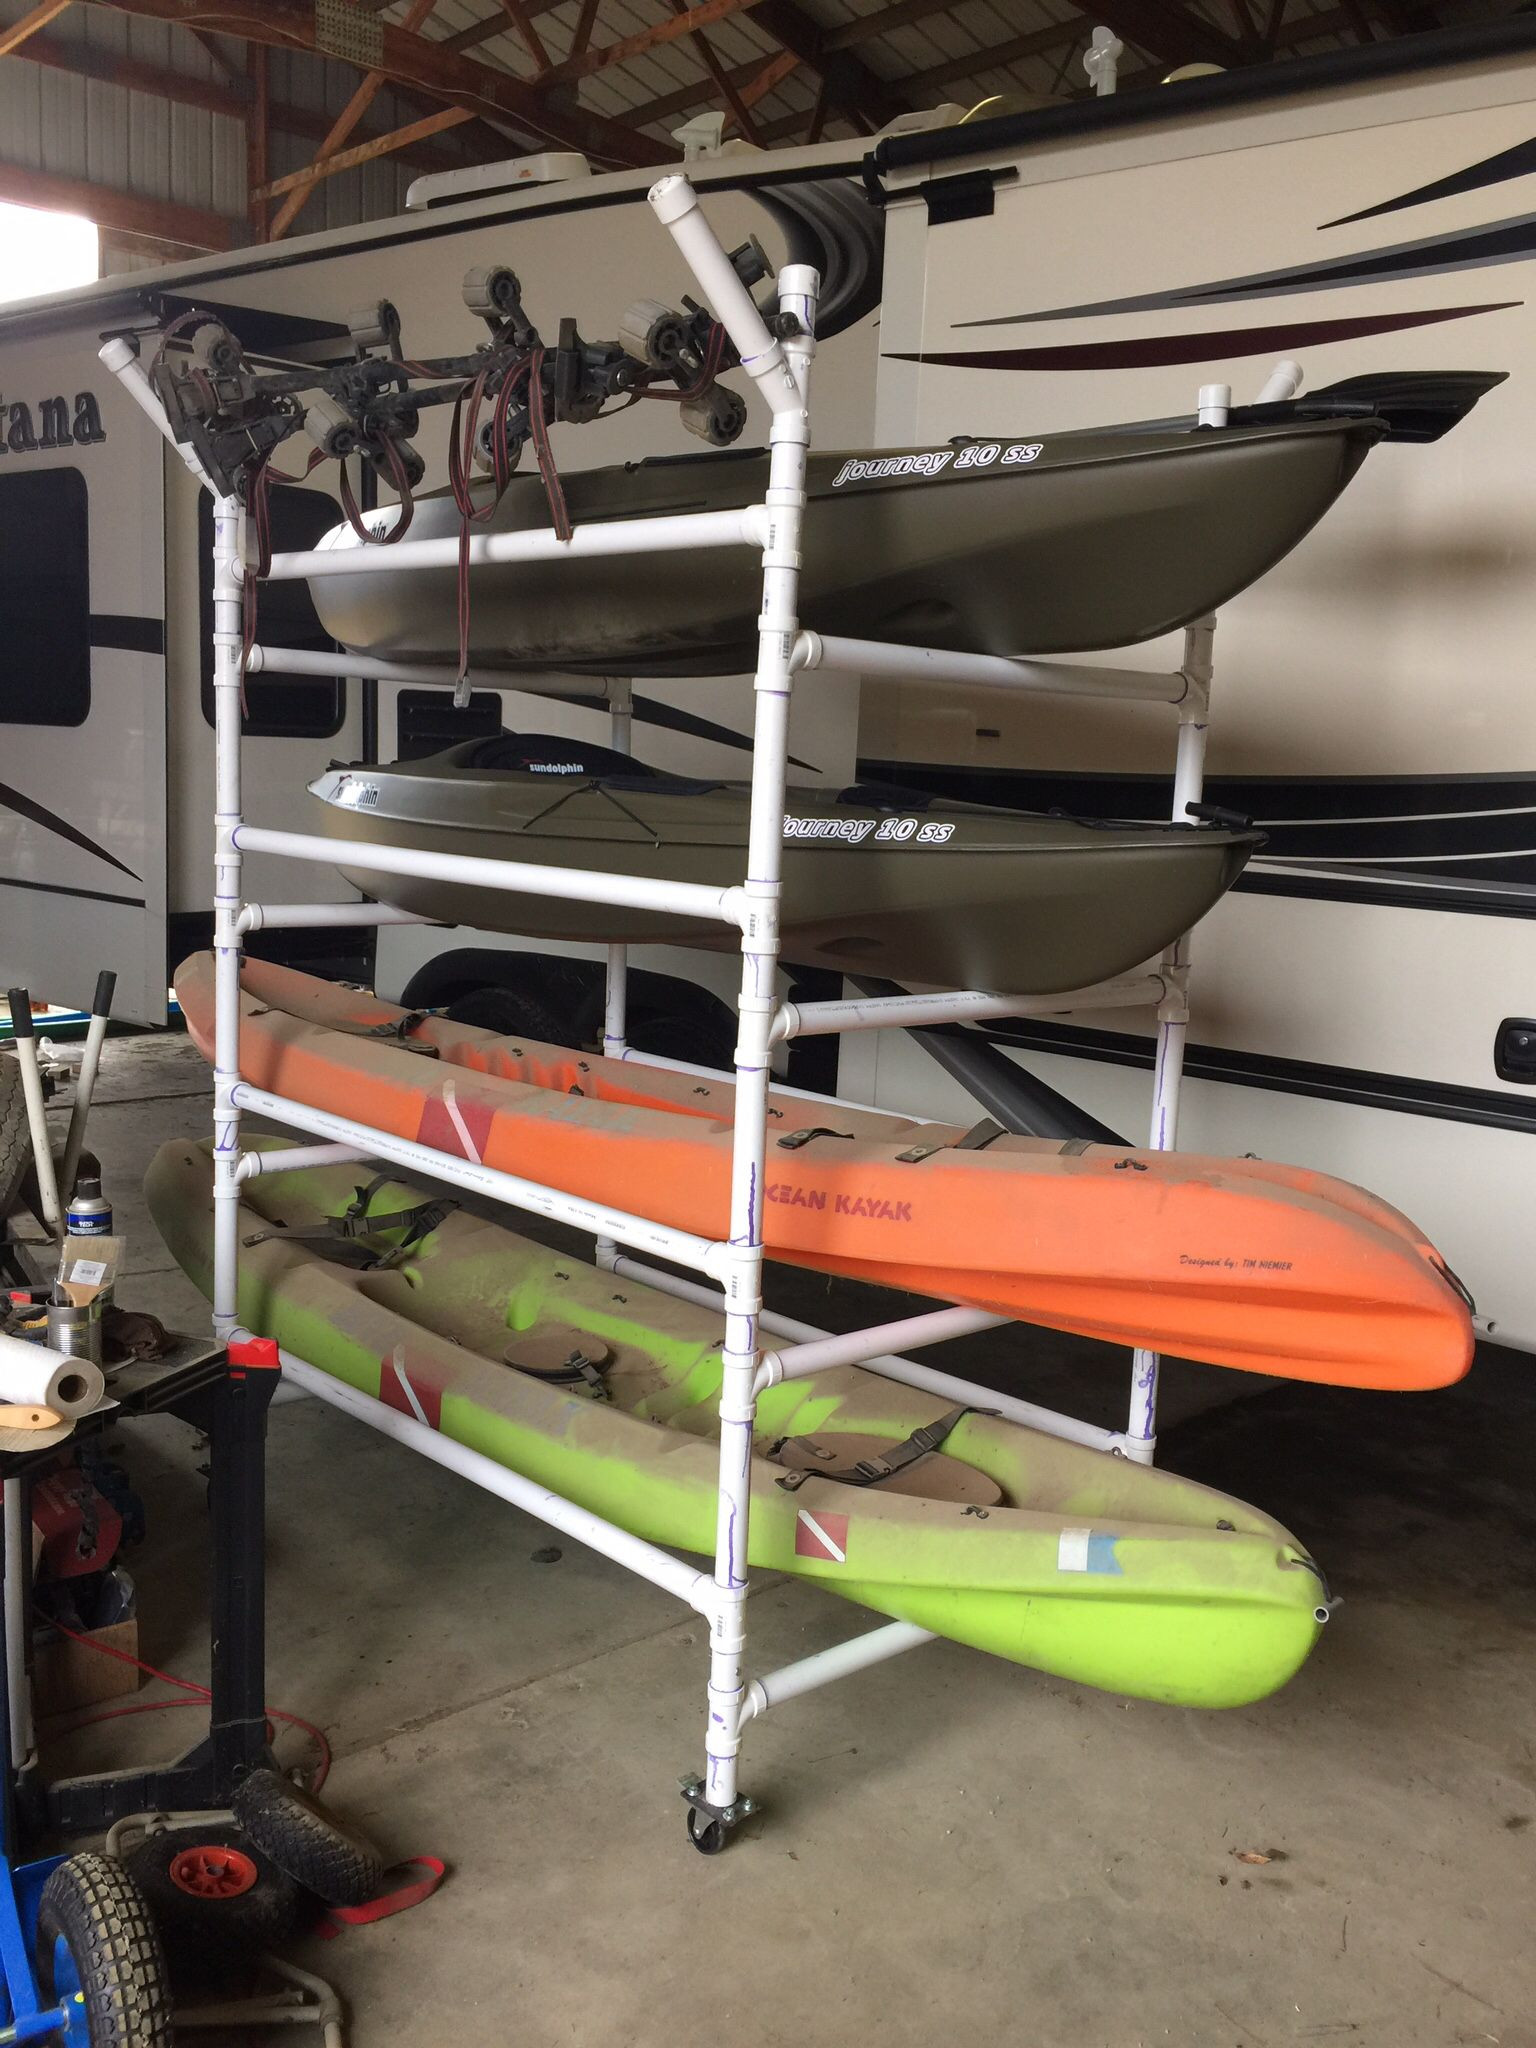 DIY Kayak Storage Rack Plans
 Homemade PVC kayak rack can store 4 kayaks paddles